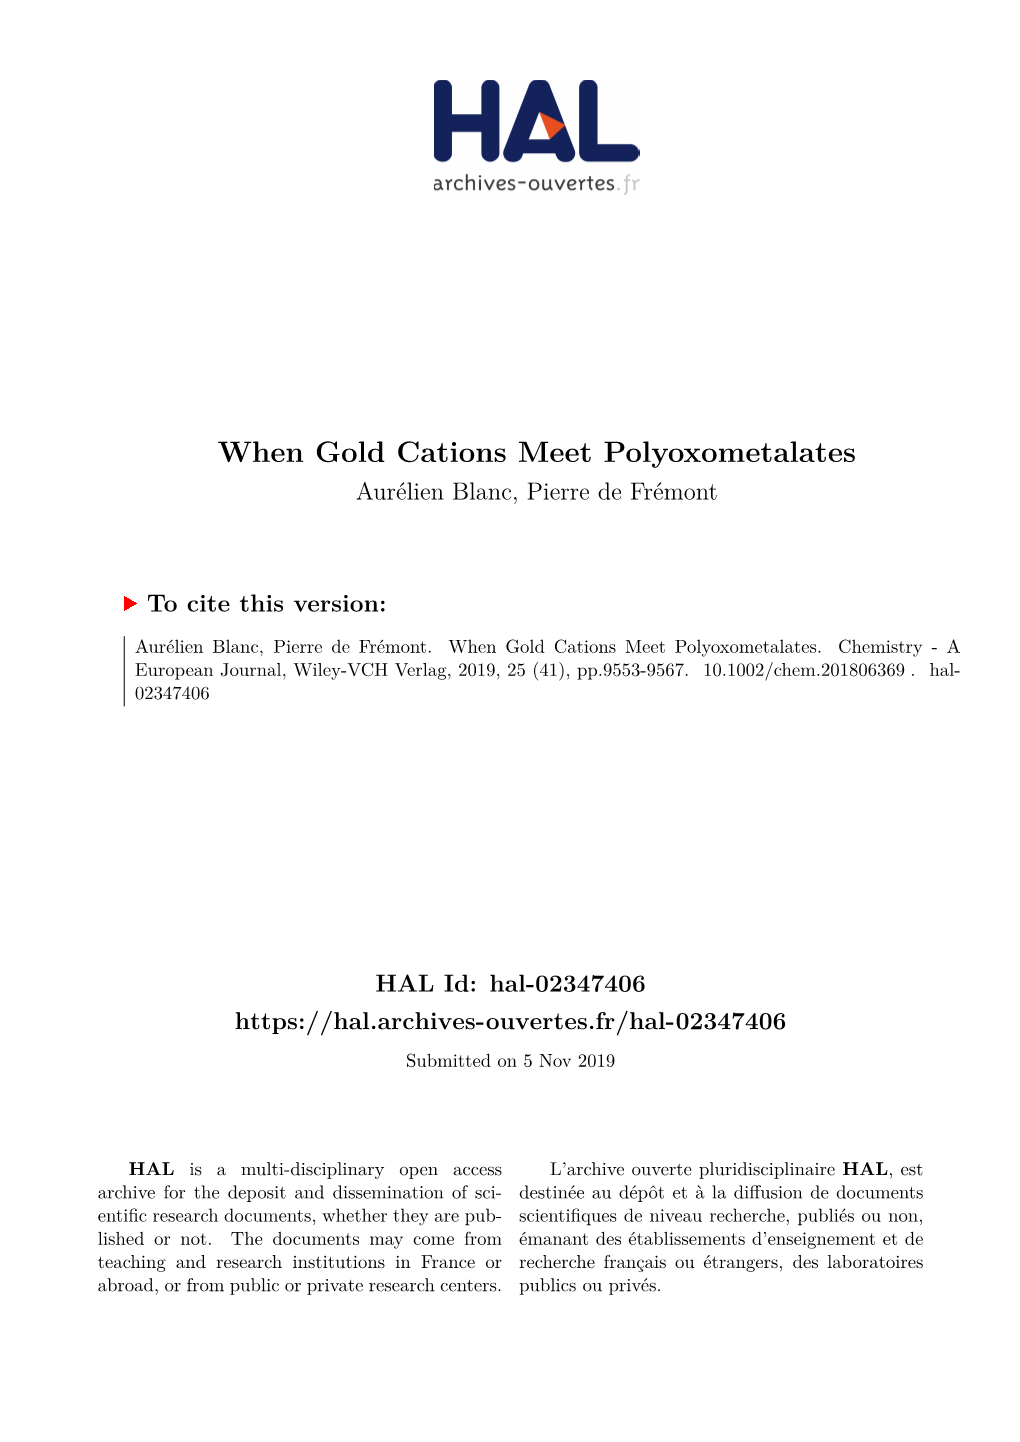 When Gold Cations Meet Polyoxometalates Aurélien Blanc, Pierre De Frémont